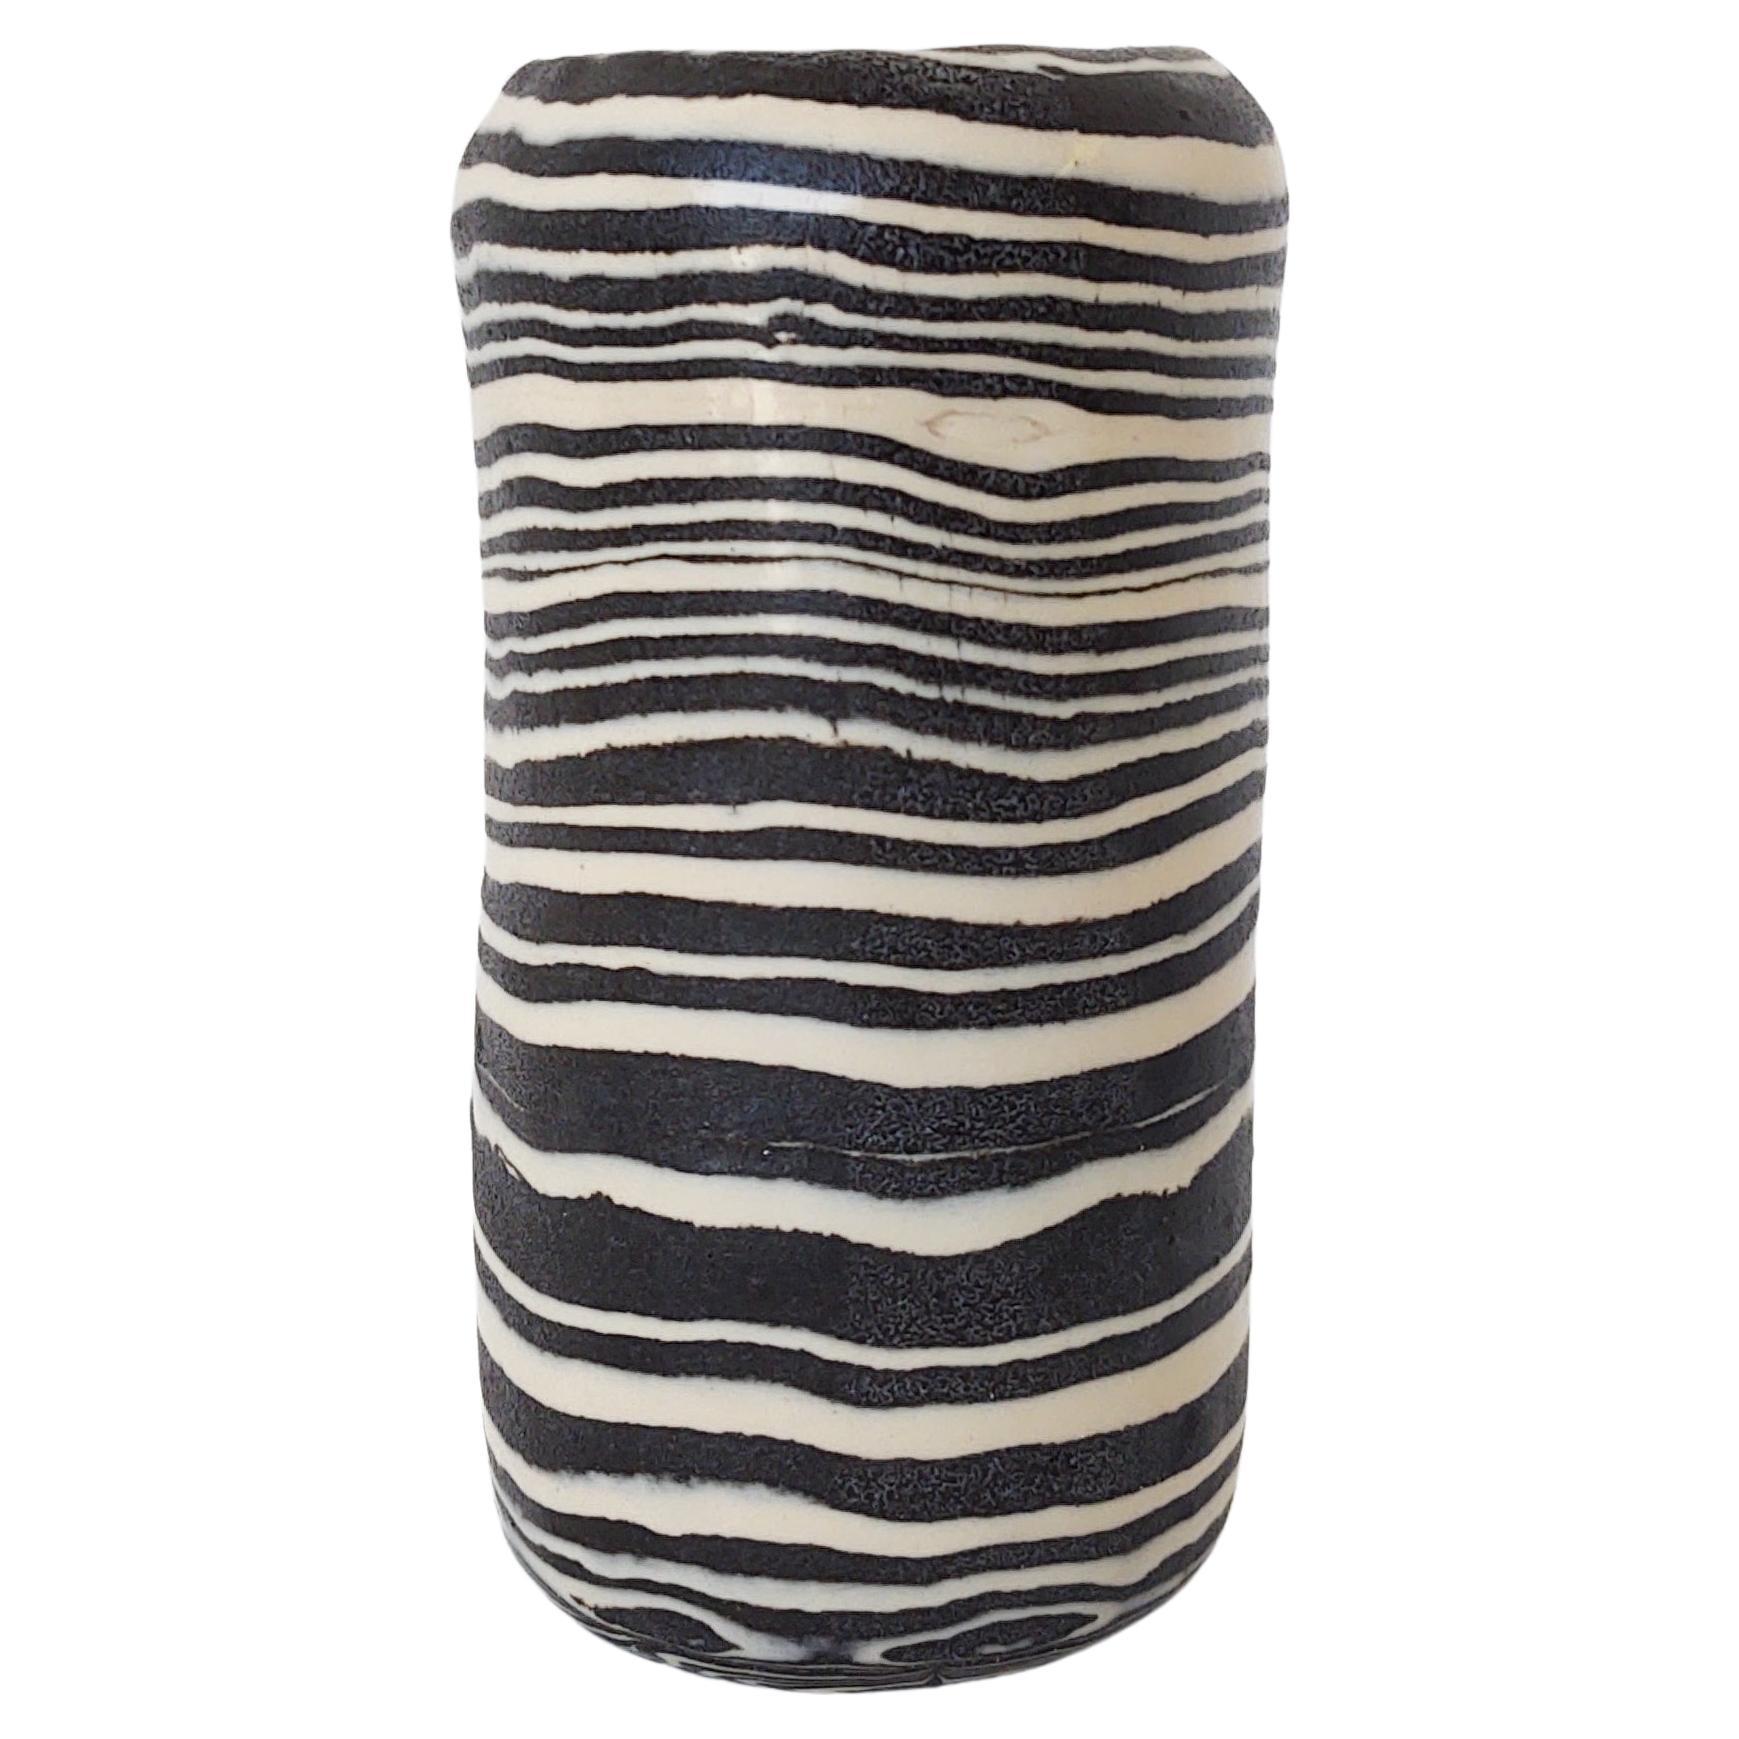 Handgefertigte schwarz-weiß gestreifte Keramikvase „Zebra“ von Fizzy Ceramics